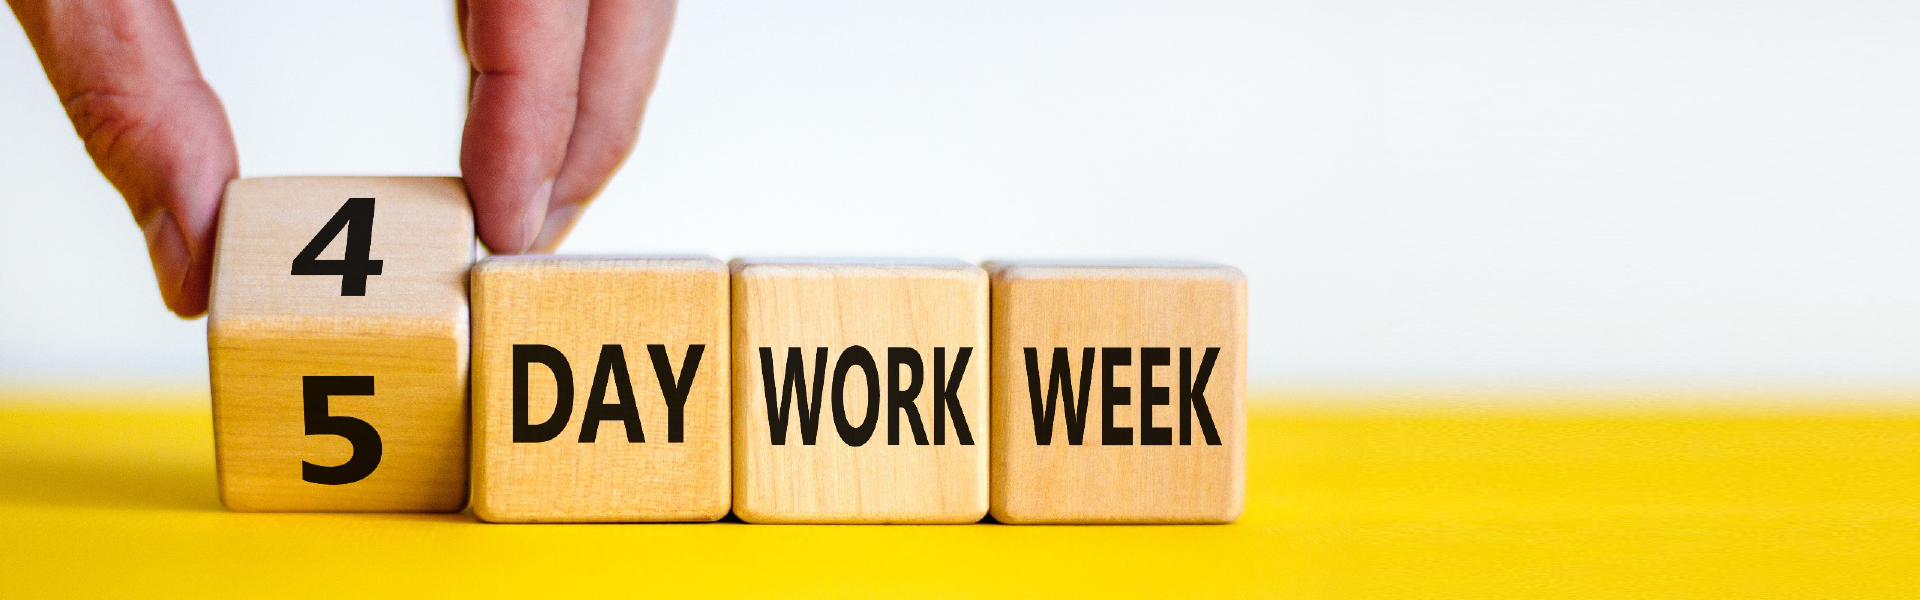 هل أسبوع العمل لو بقى أربع أيام بدل خمسة هيكون أحسن للافراد و الشركات؟